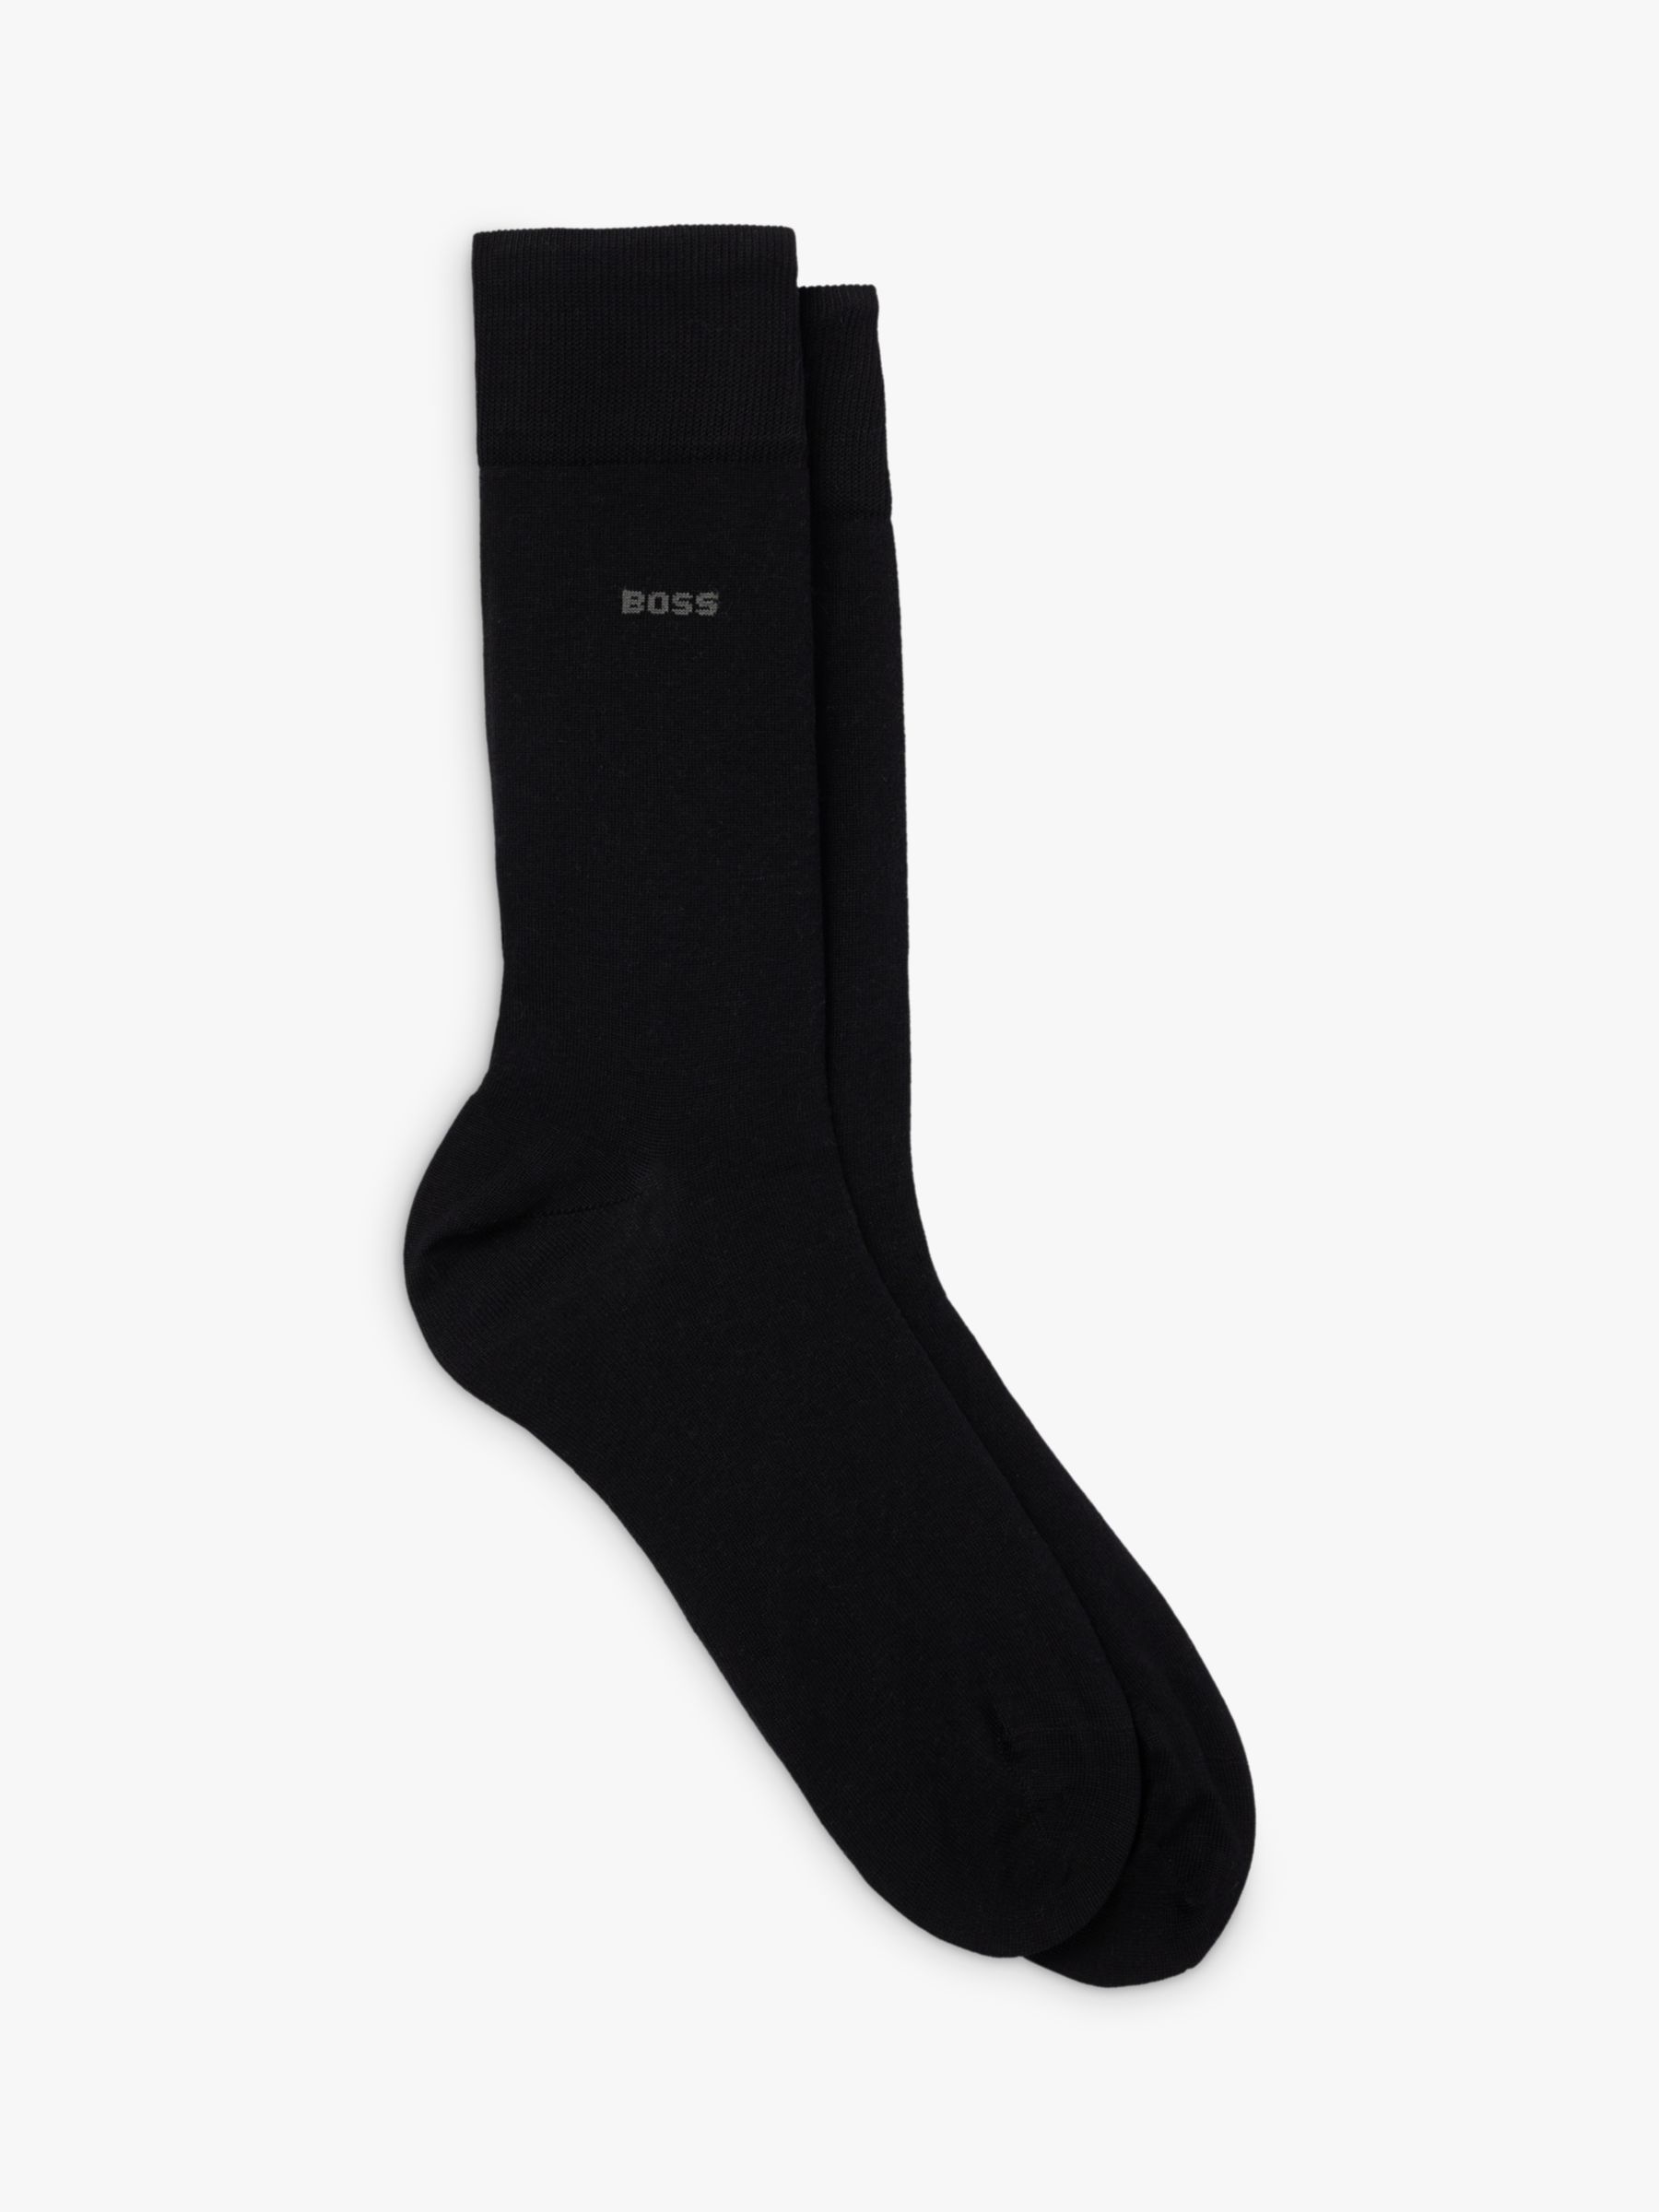 BOSS Tom Regular Socks, Pack of 2, Black, S-M